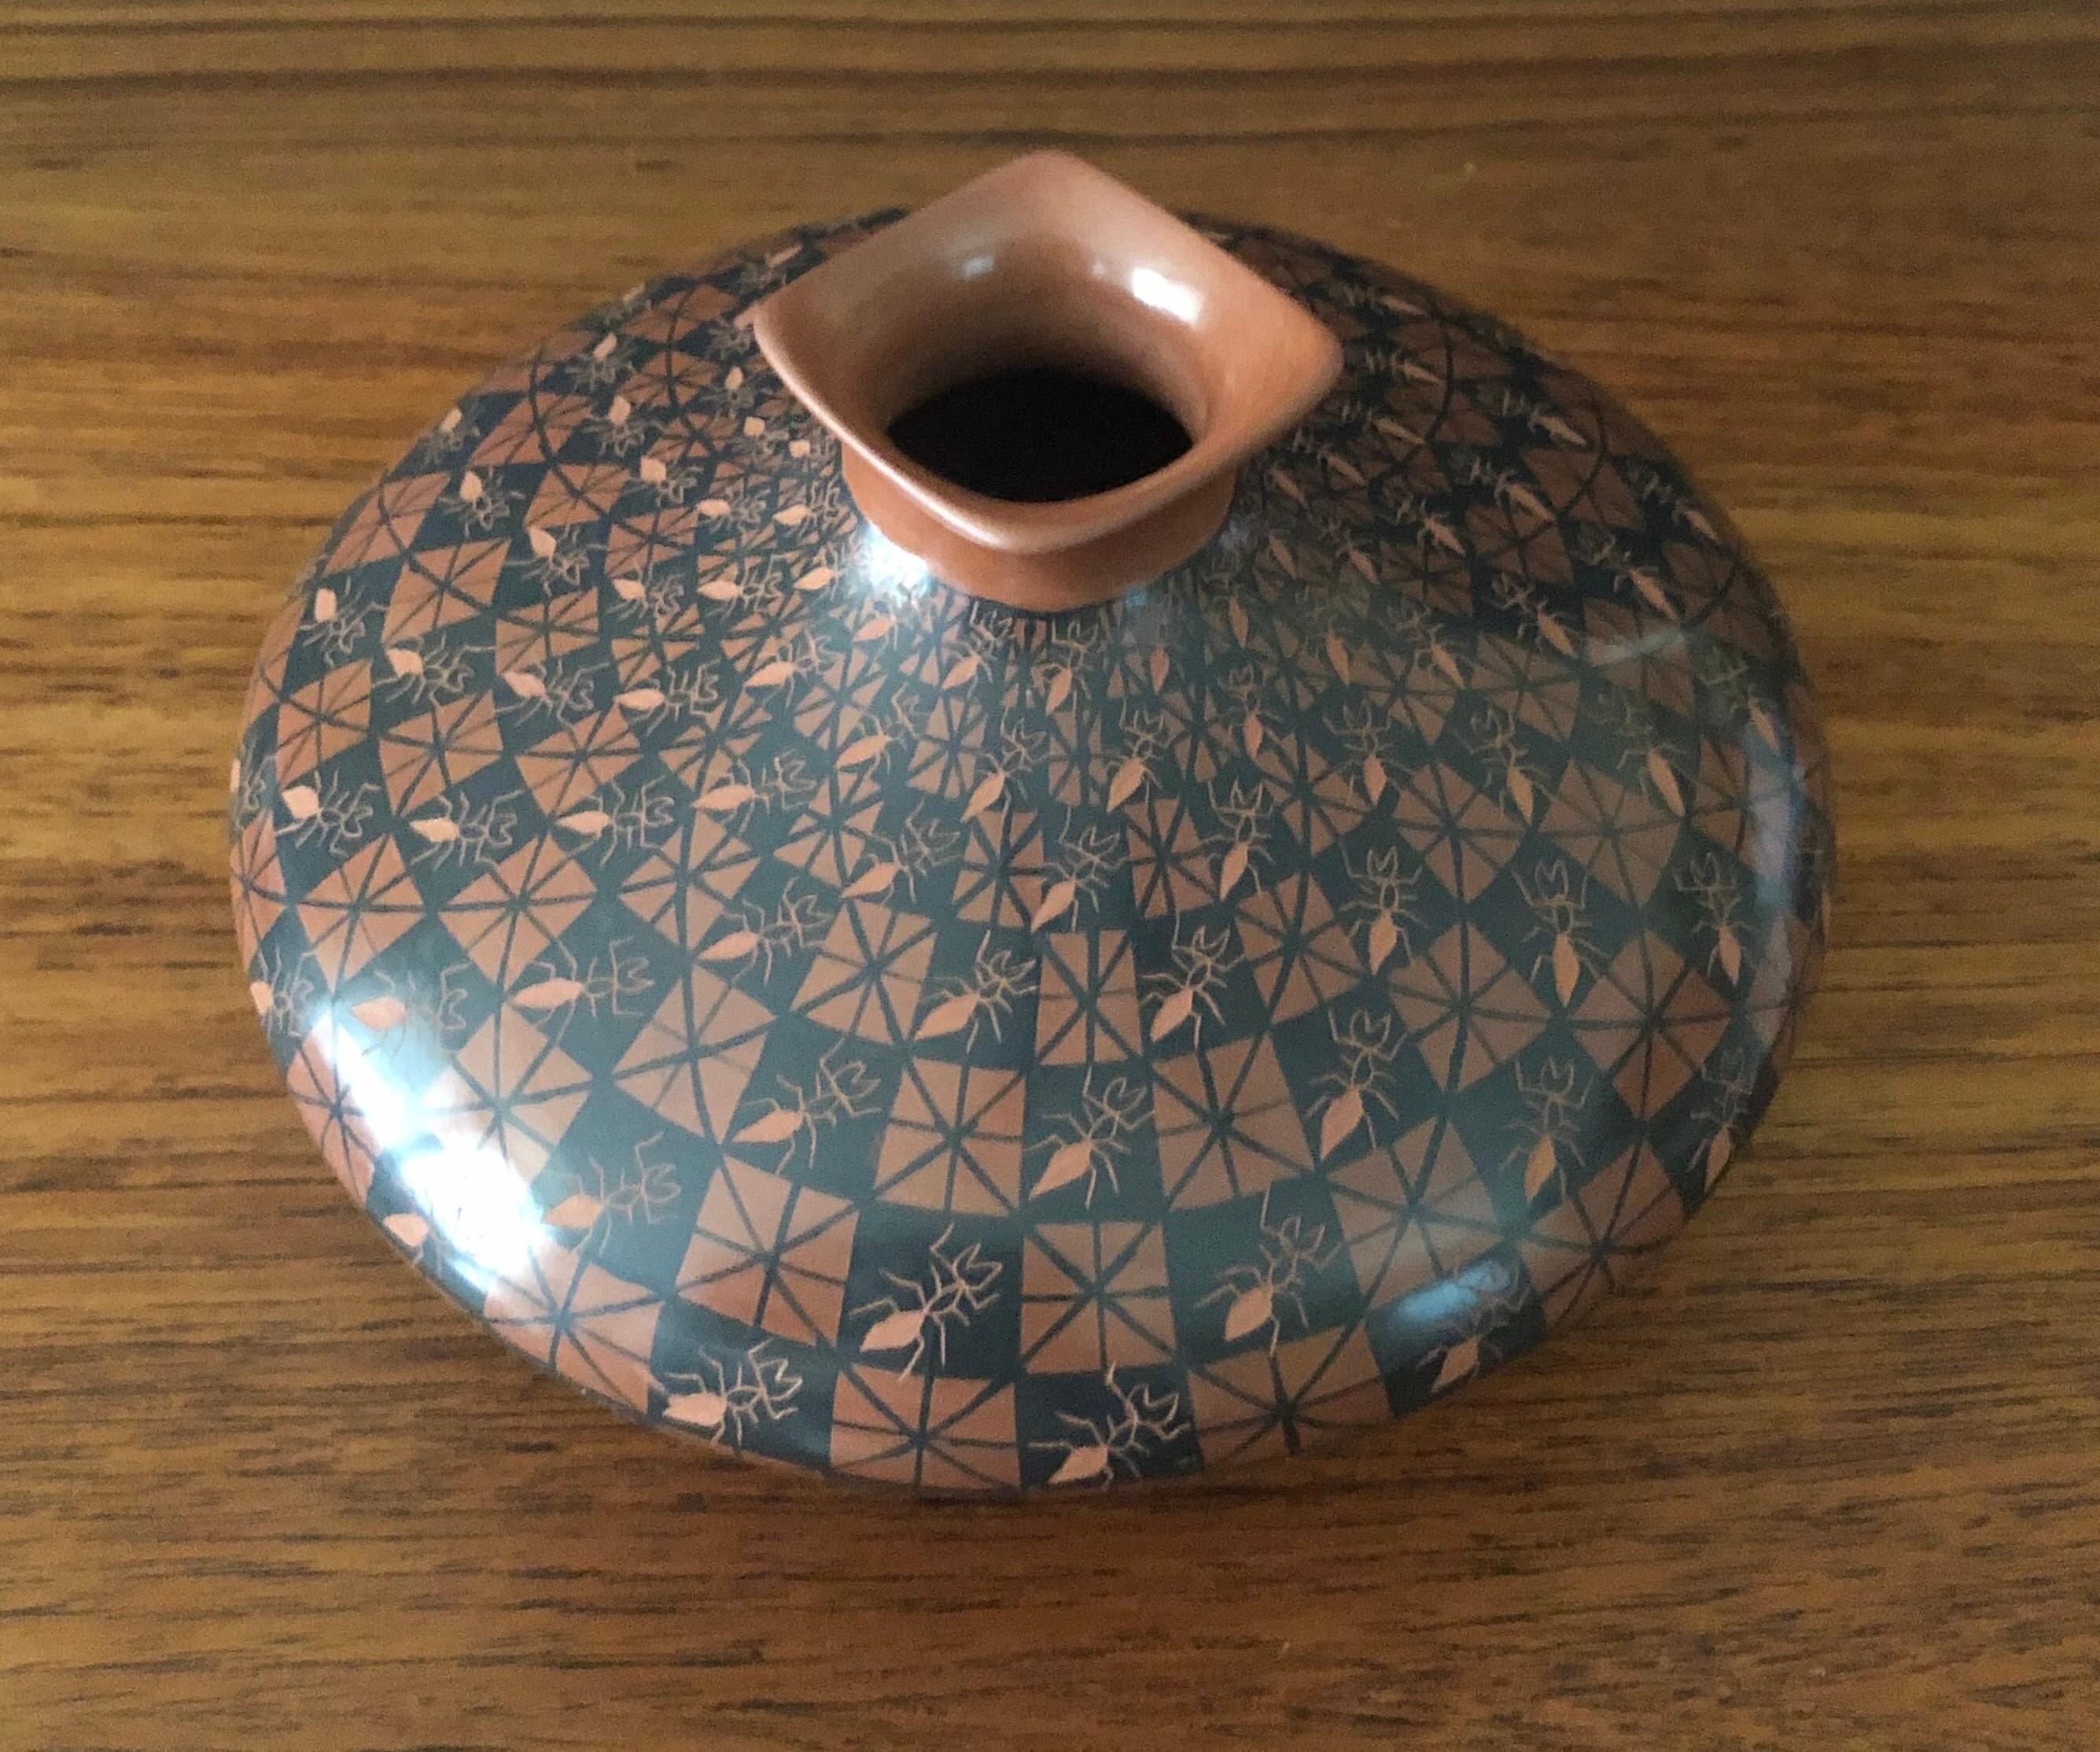 Poteries Vase à motif de fourmis de la poterie Mata Ortiz / Pot à graines par Yoly Ledezma en vente